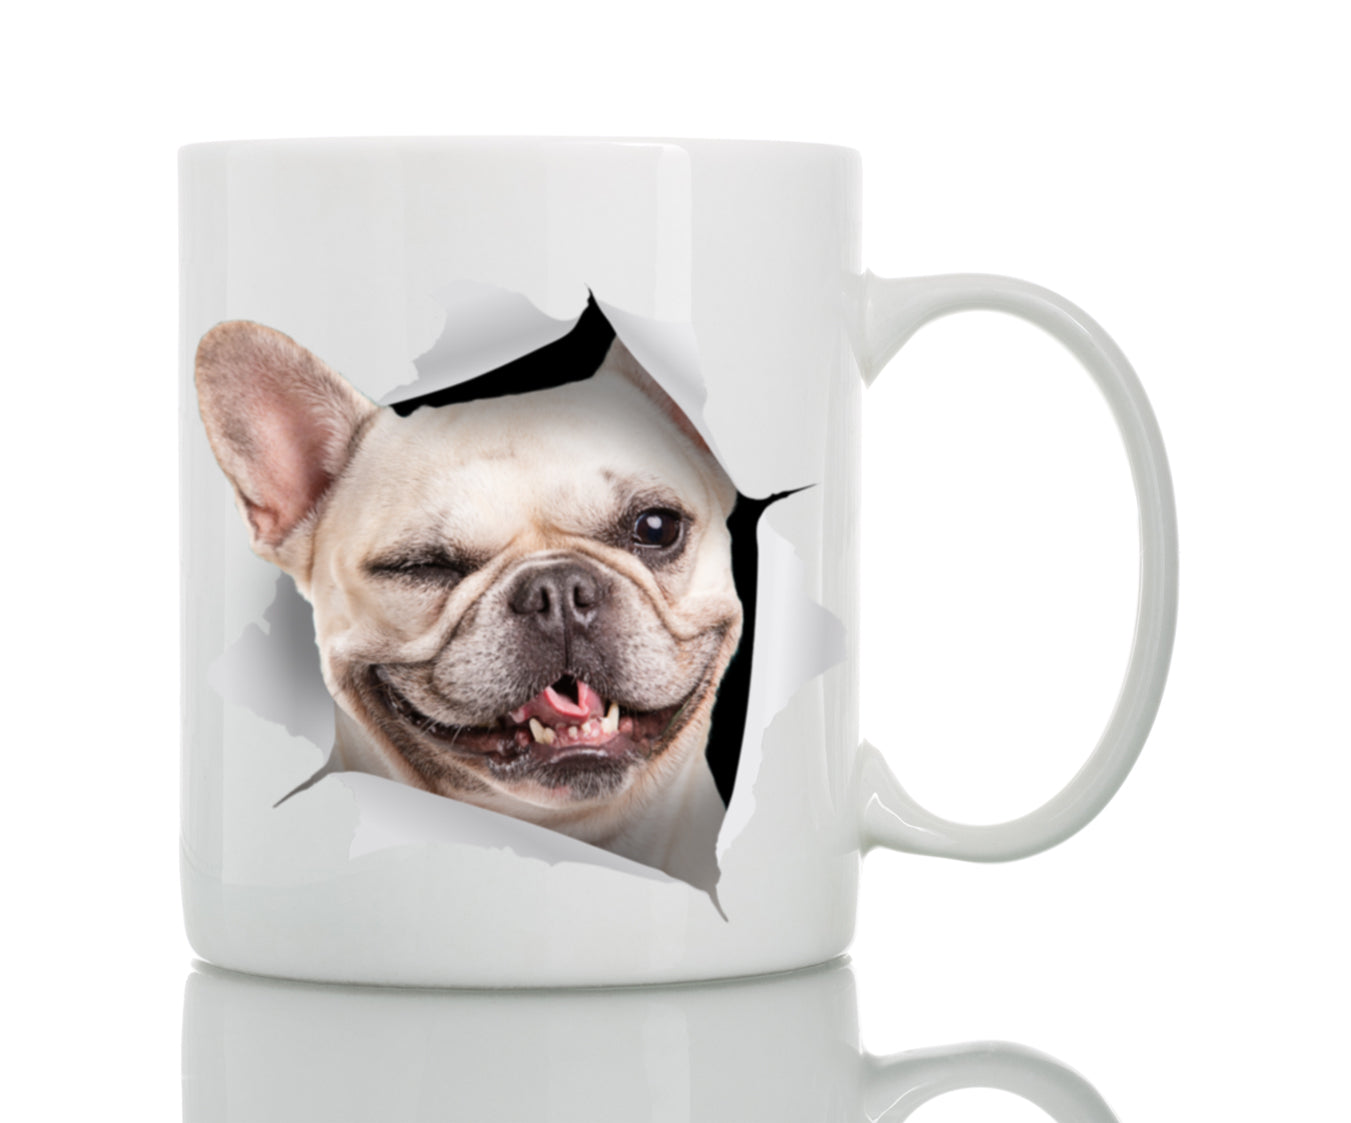 Winking French Bulldog Mug